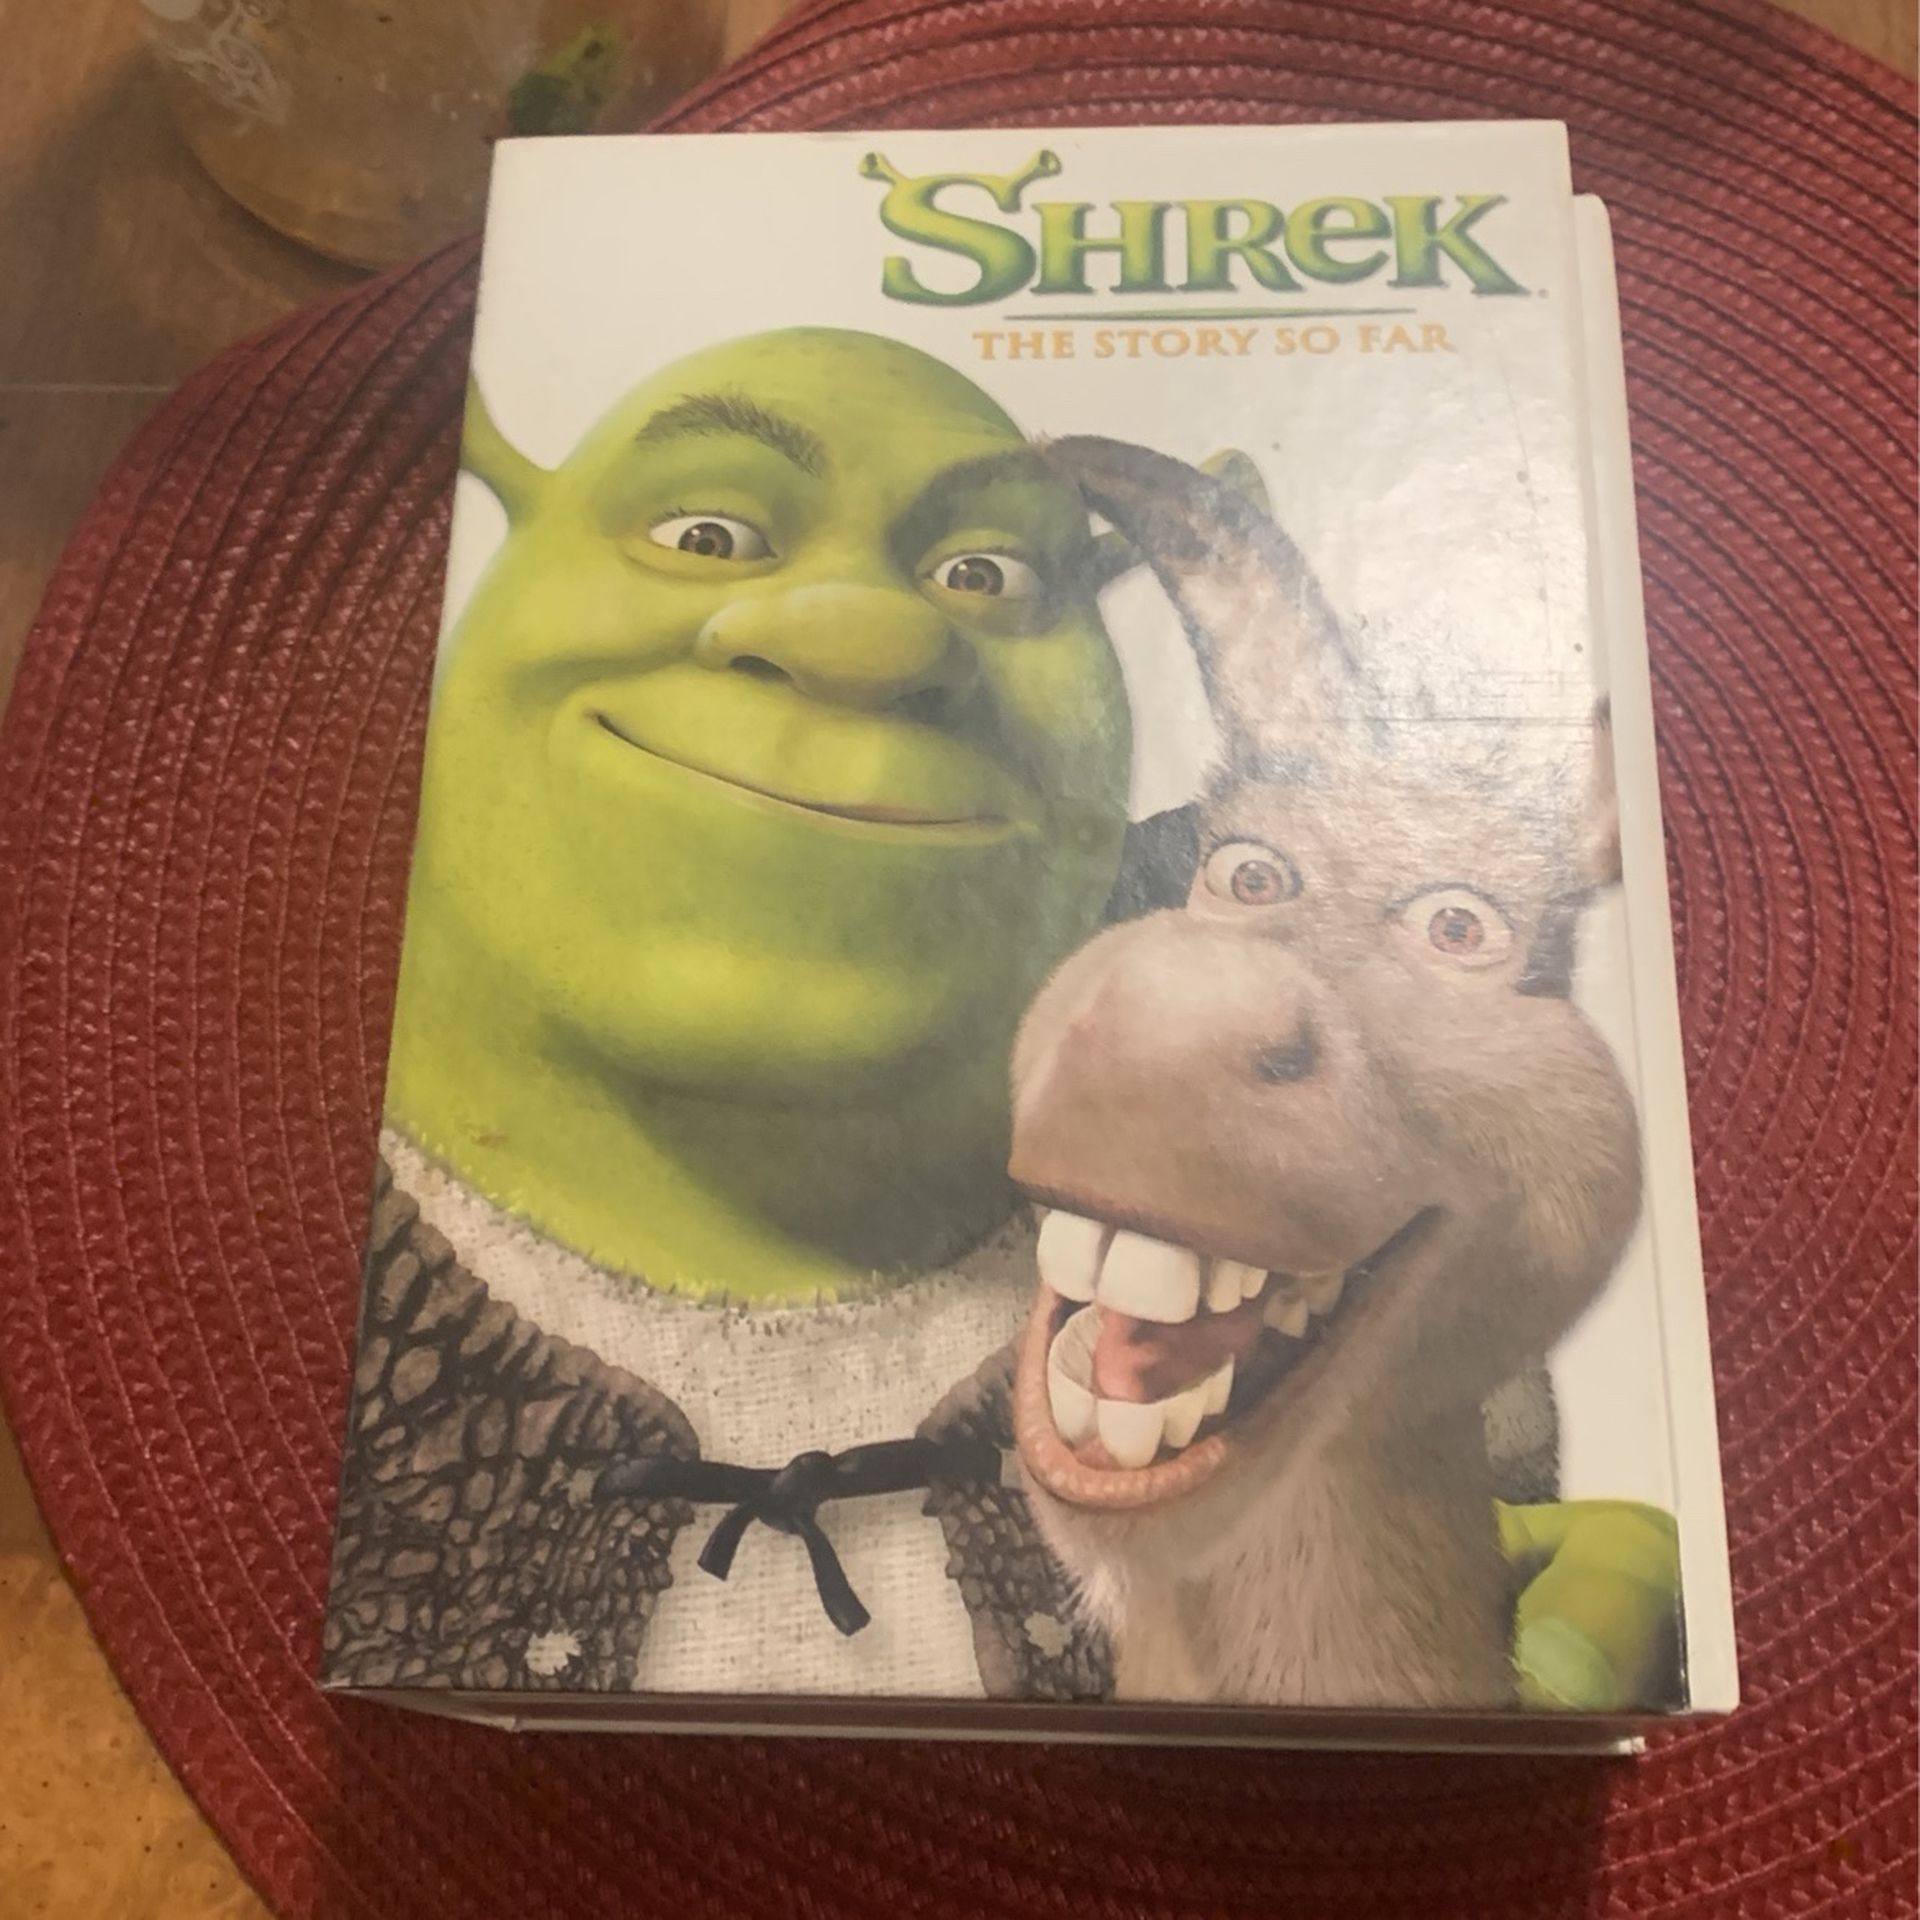 Shrek movie 3-D Shrek two and bonus desk comes with glasses never been used